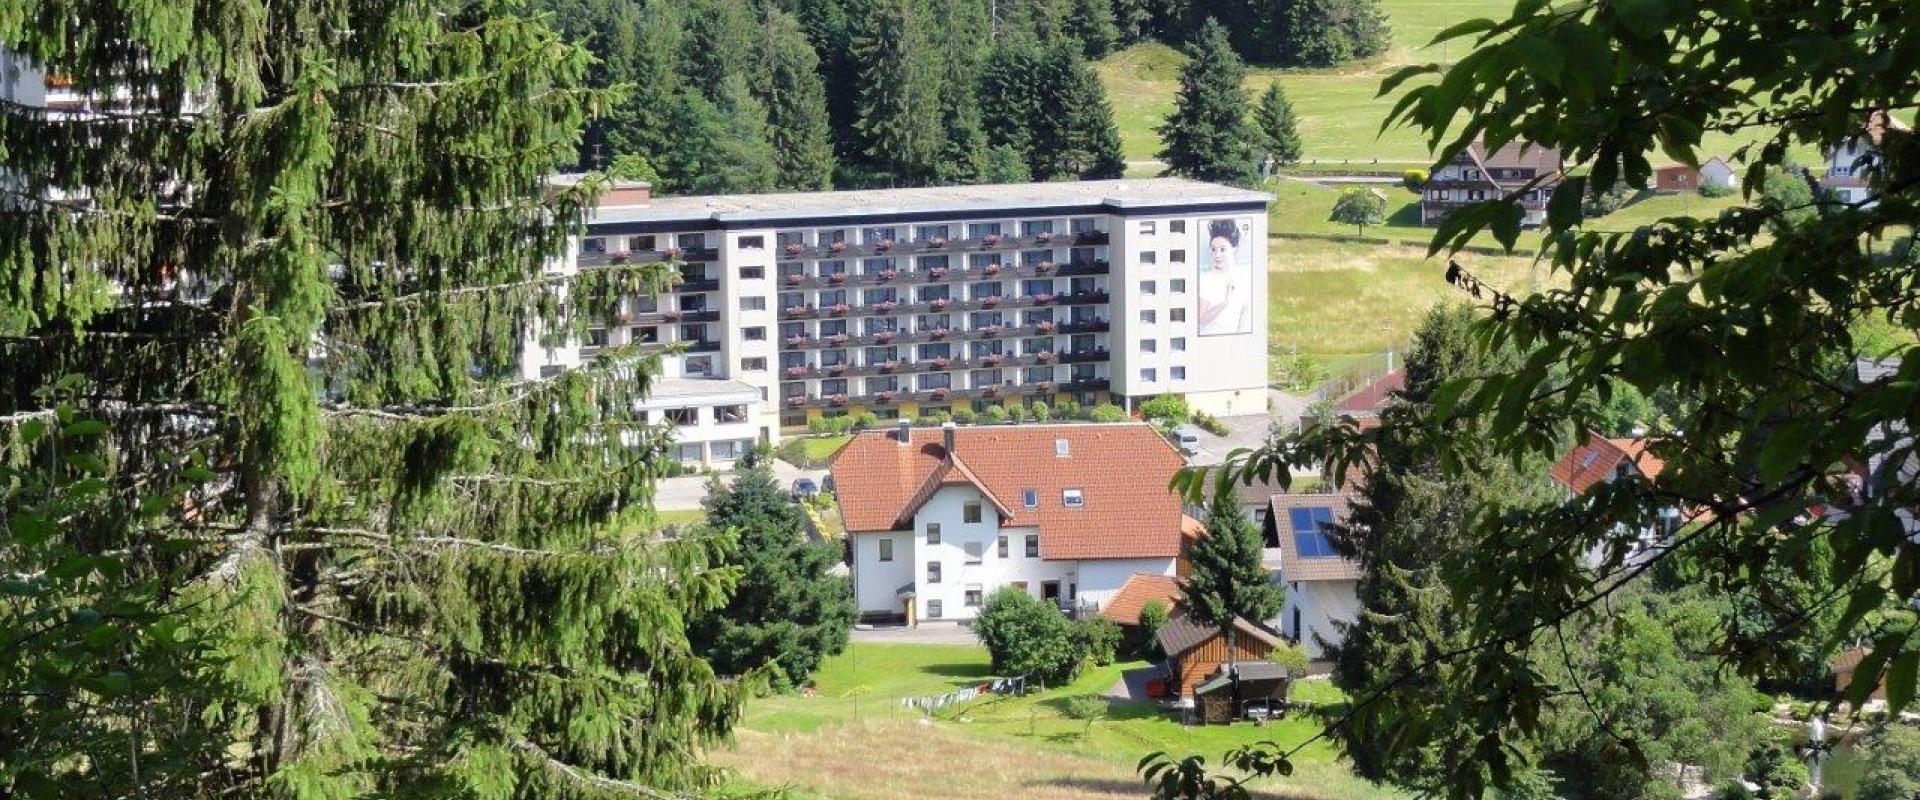 22064 Biker Hotel Rechtmurg 27 im Schwarzwald.jpg